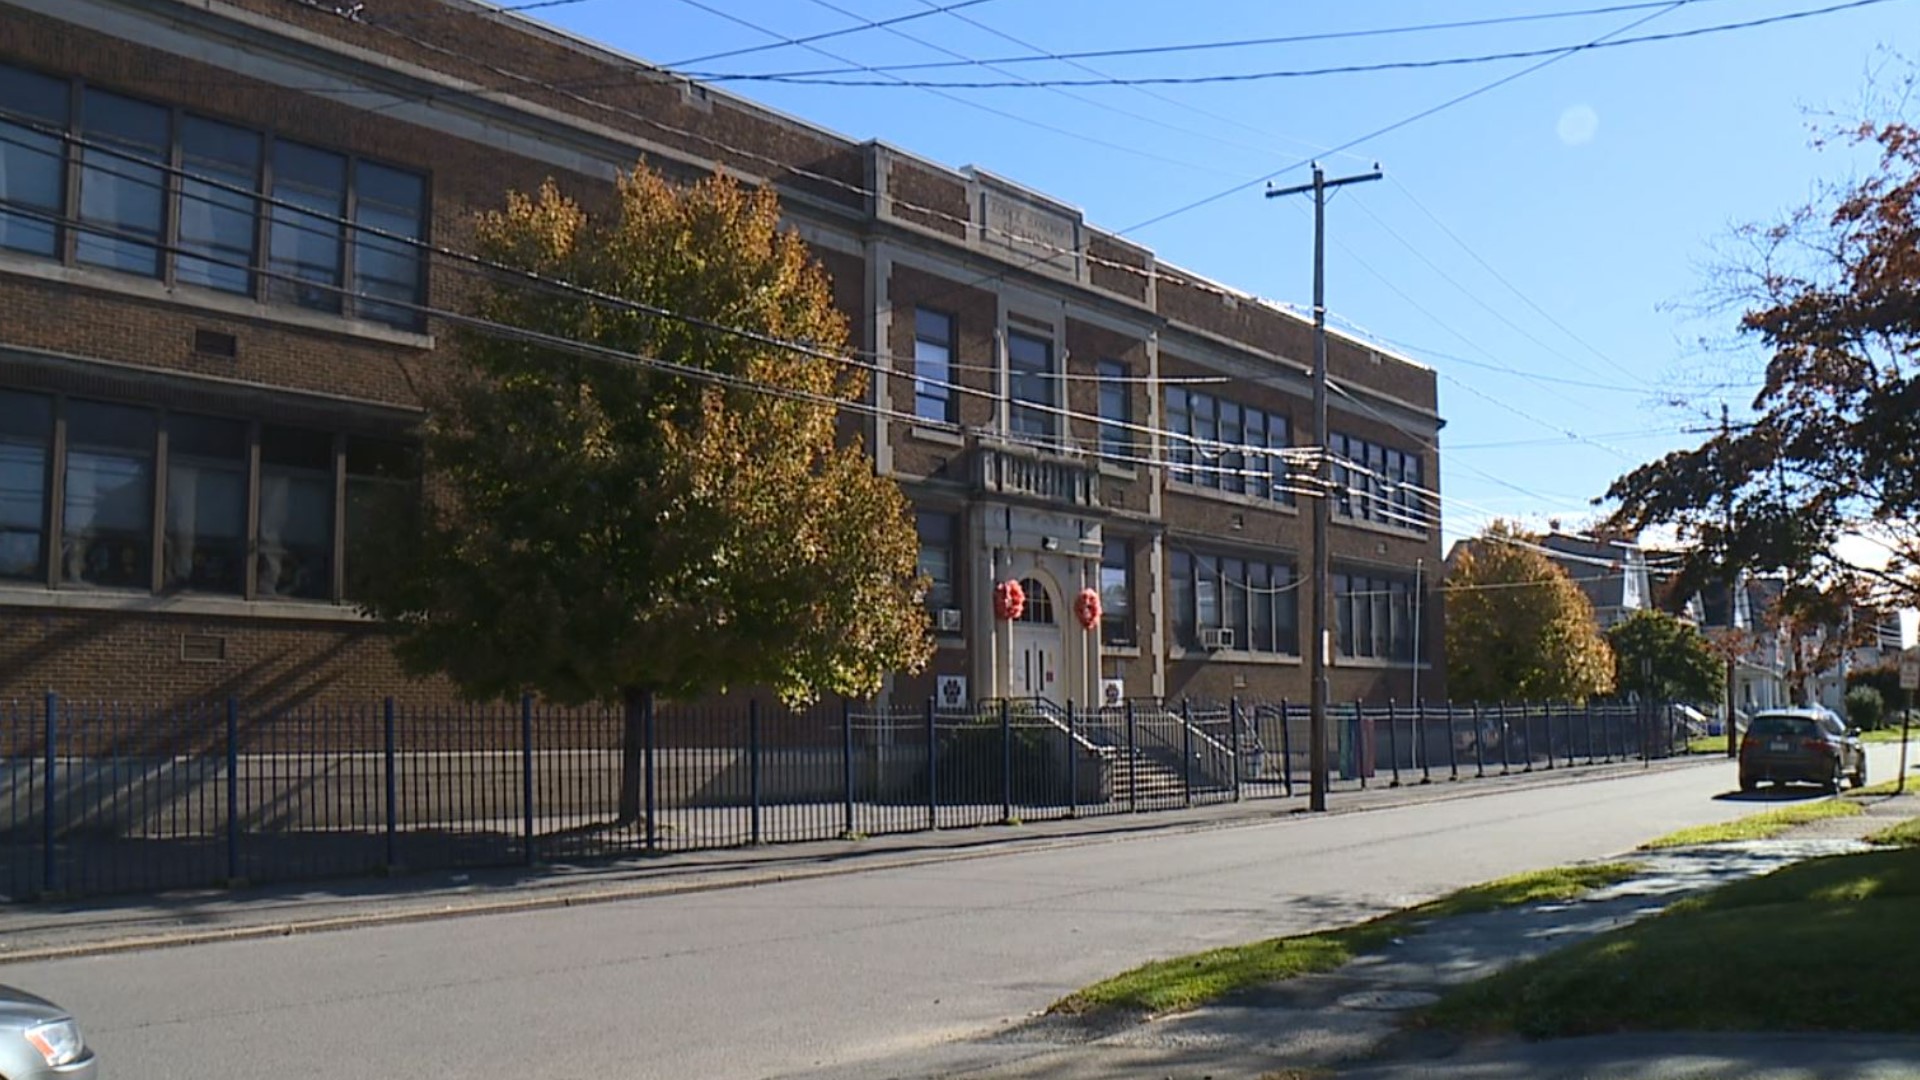 A school is closing its doors for good in Scranton.